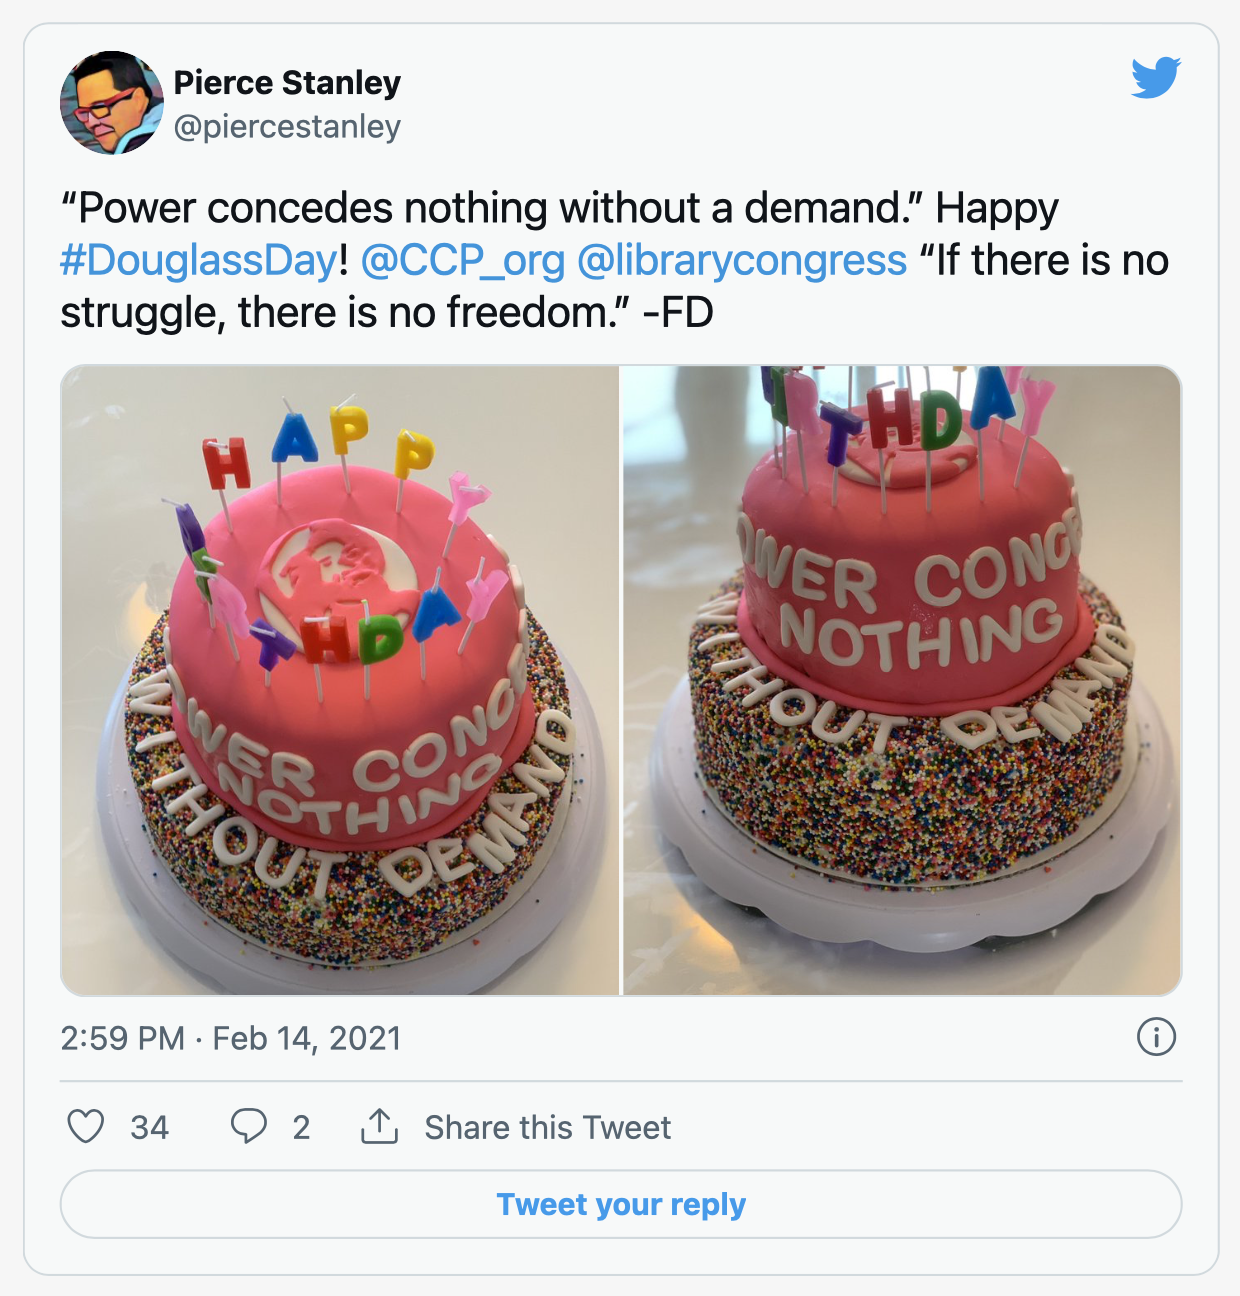 screenshot of tweet from Pierce Stanley